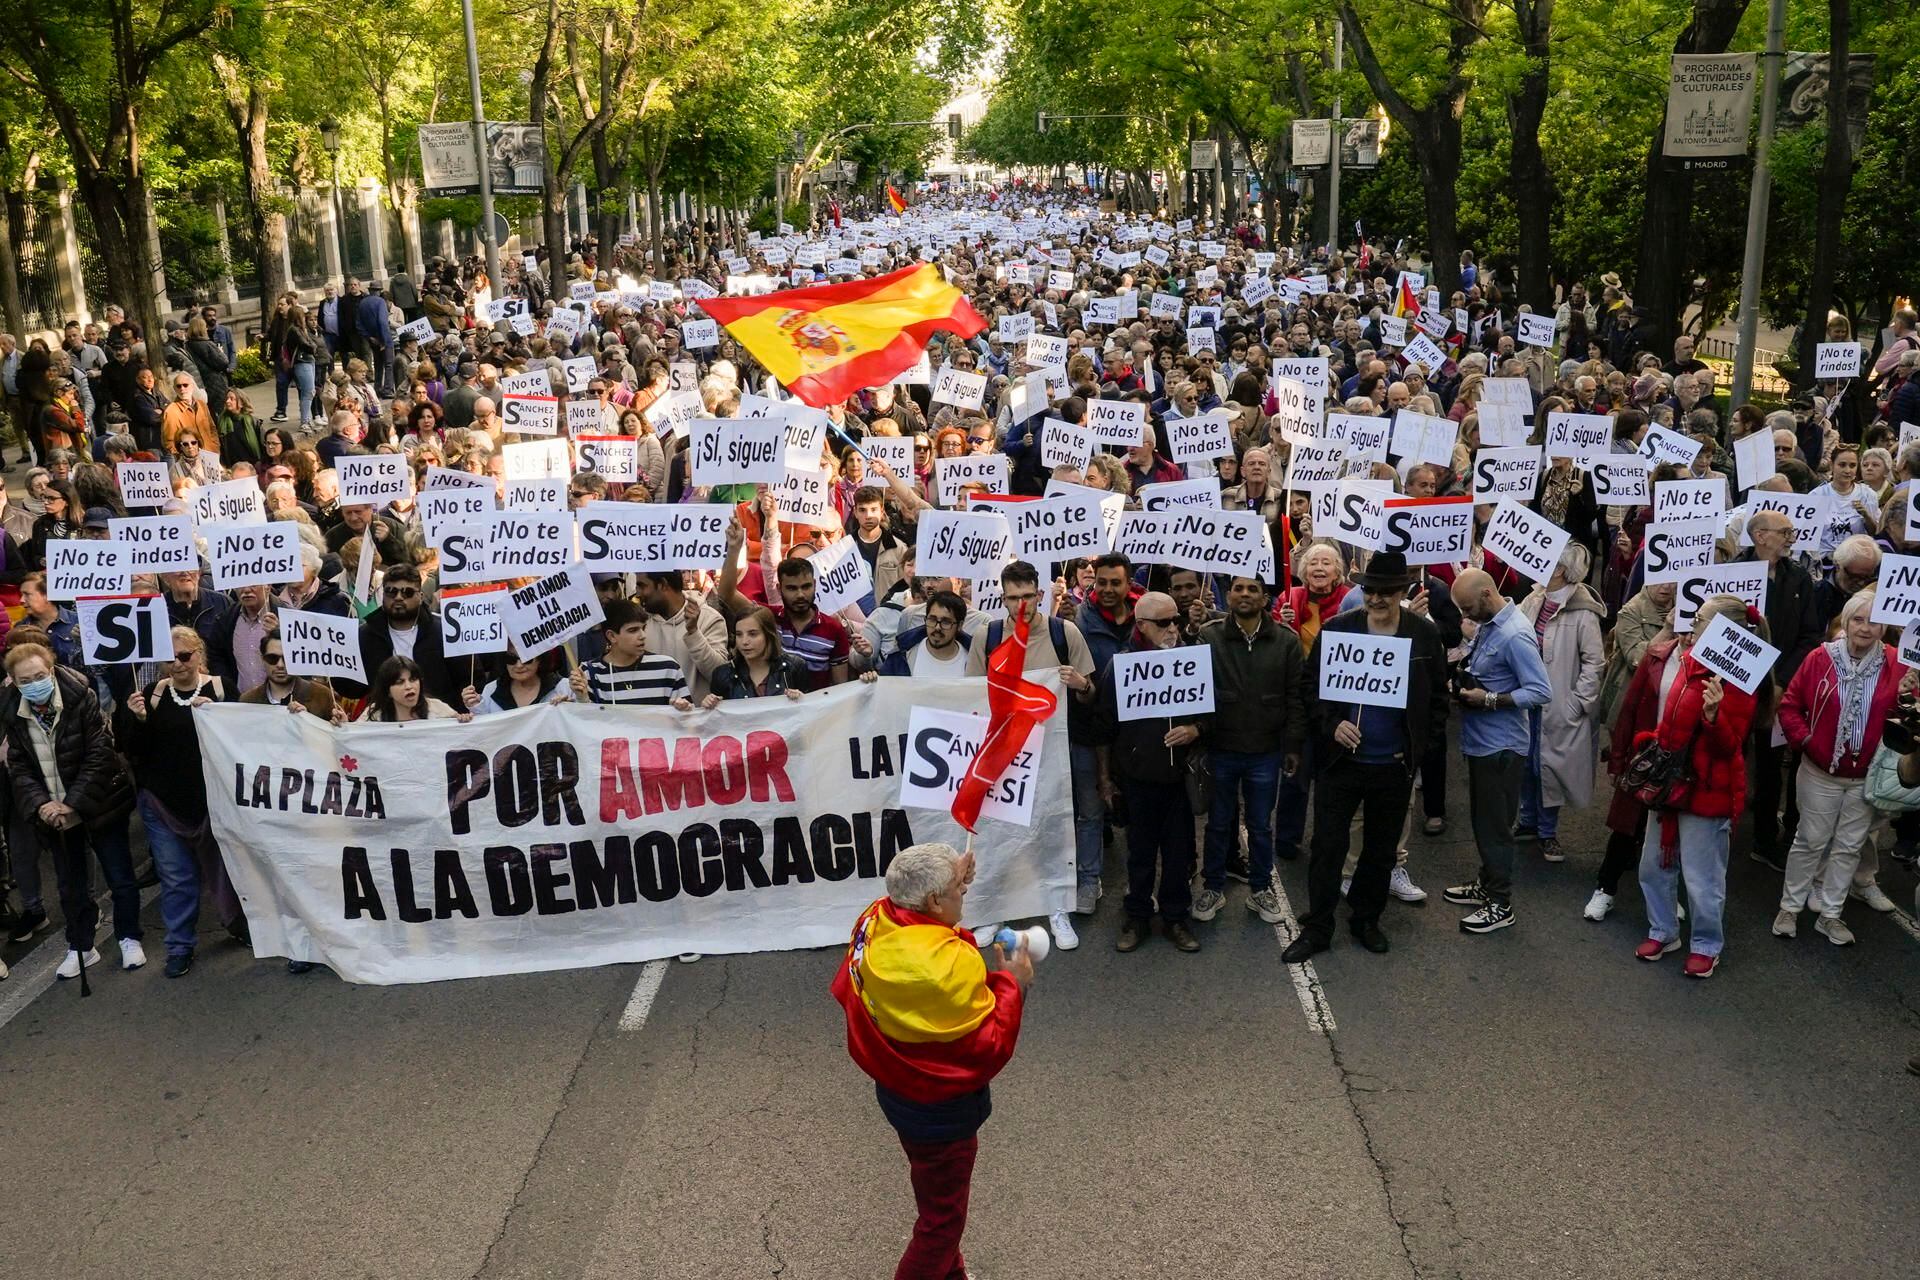 ‘Por amor a la democracia’: Marchan para que Sánchez no deje el gobierno de España tras acusaciones